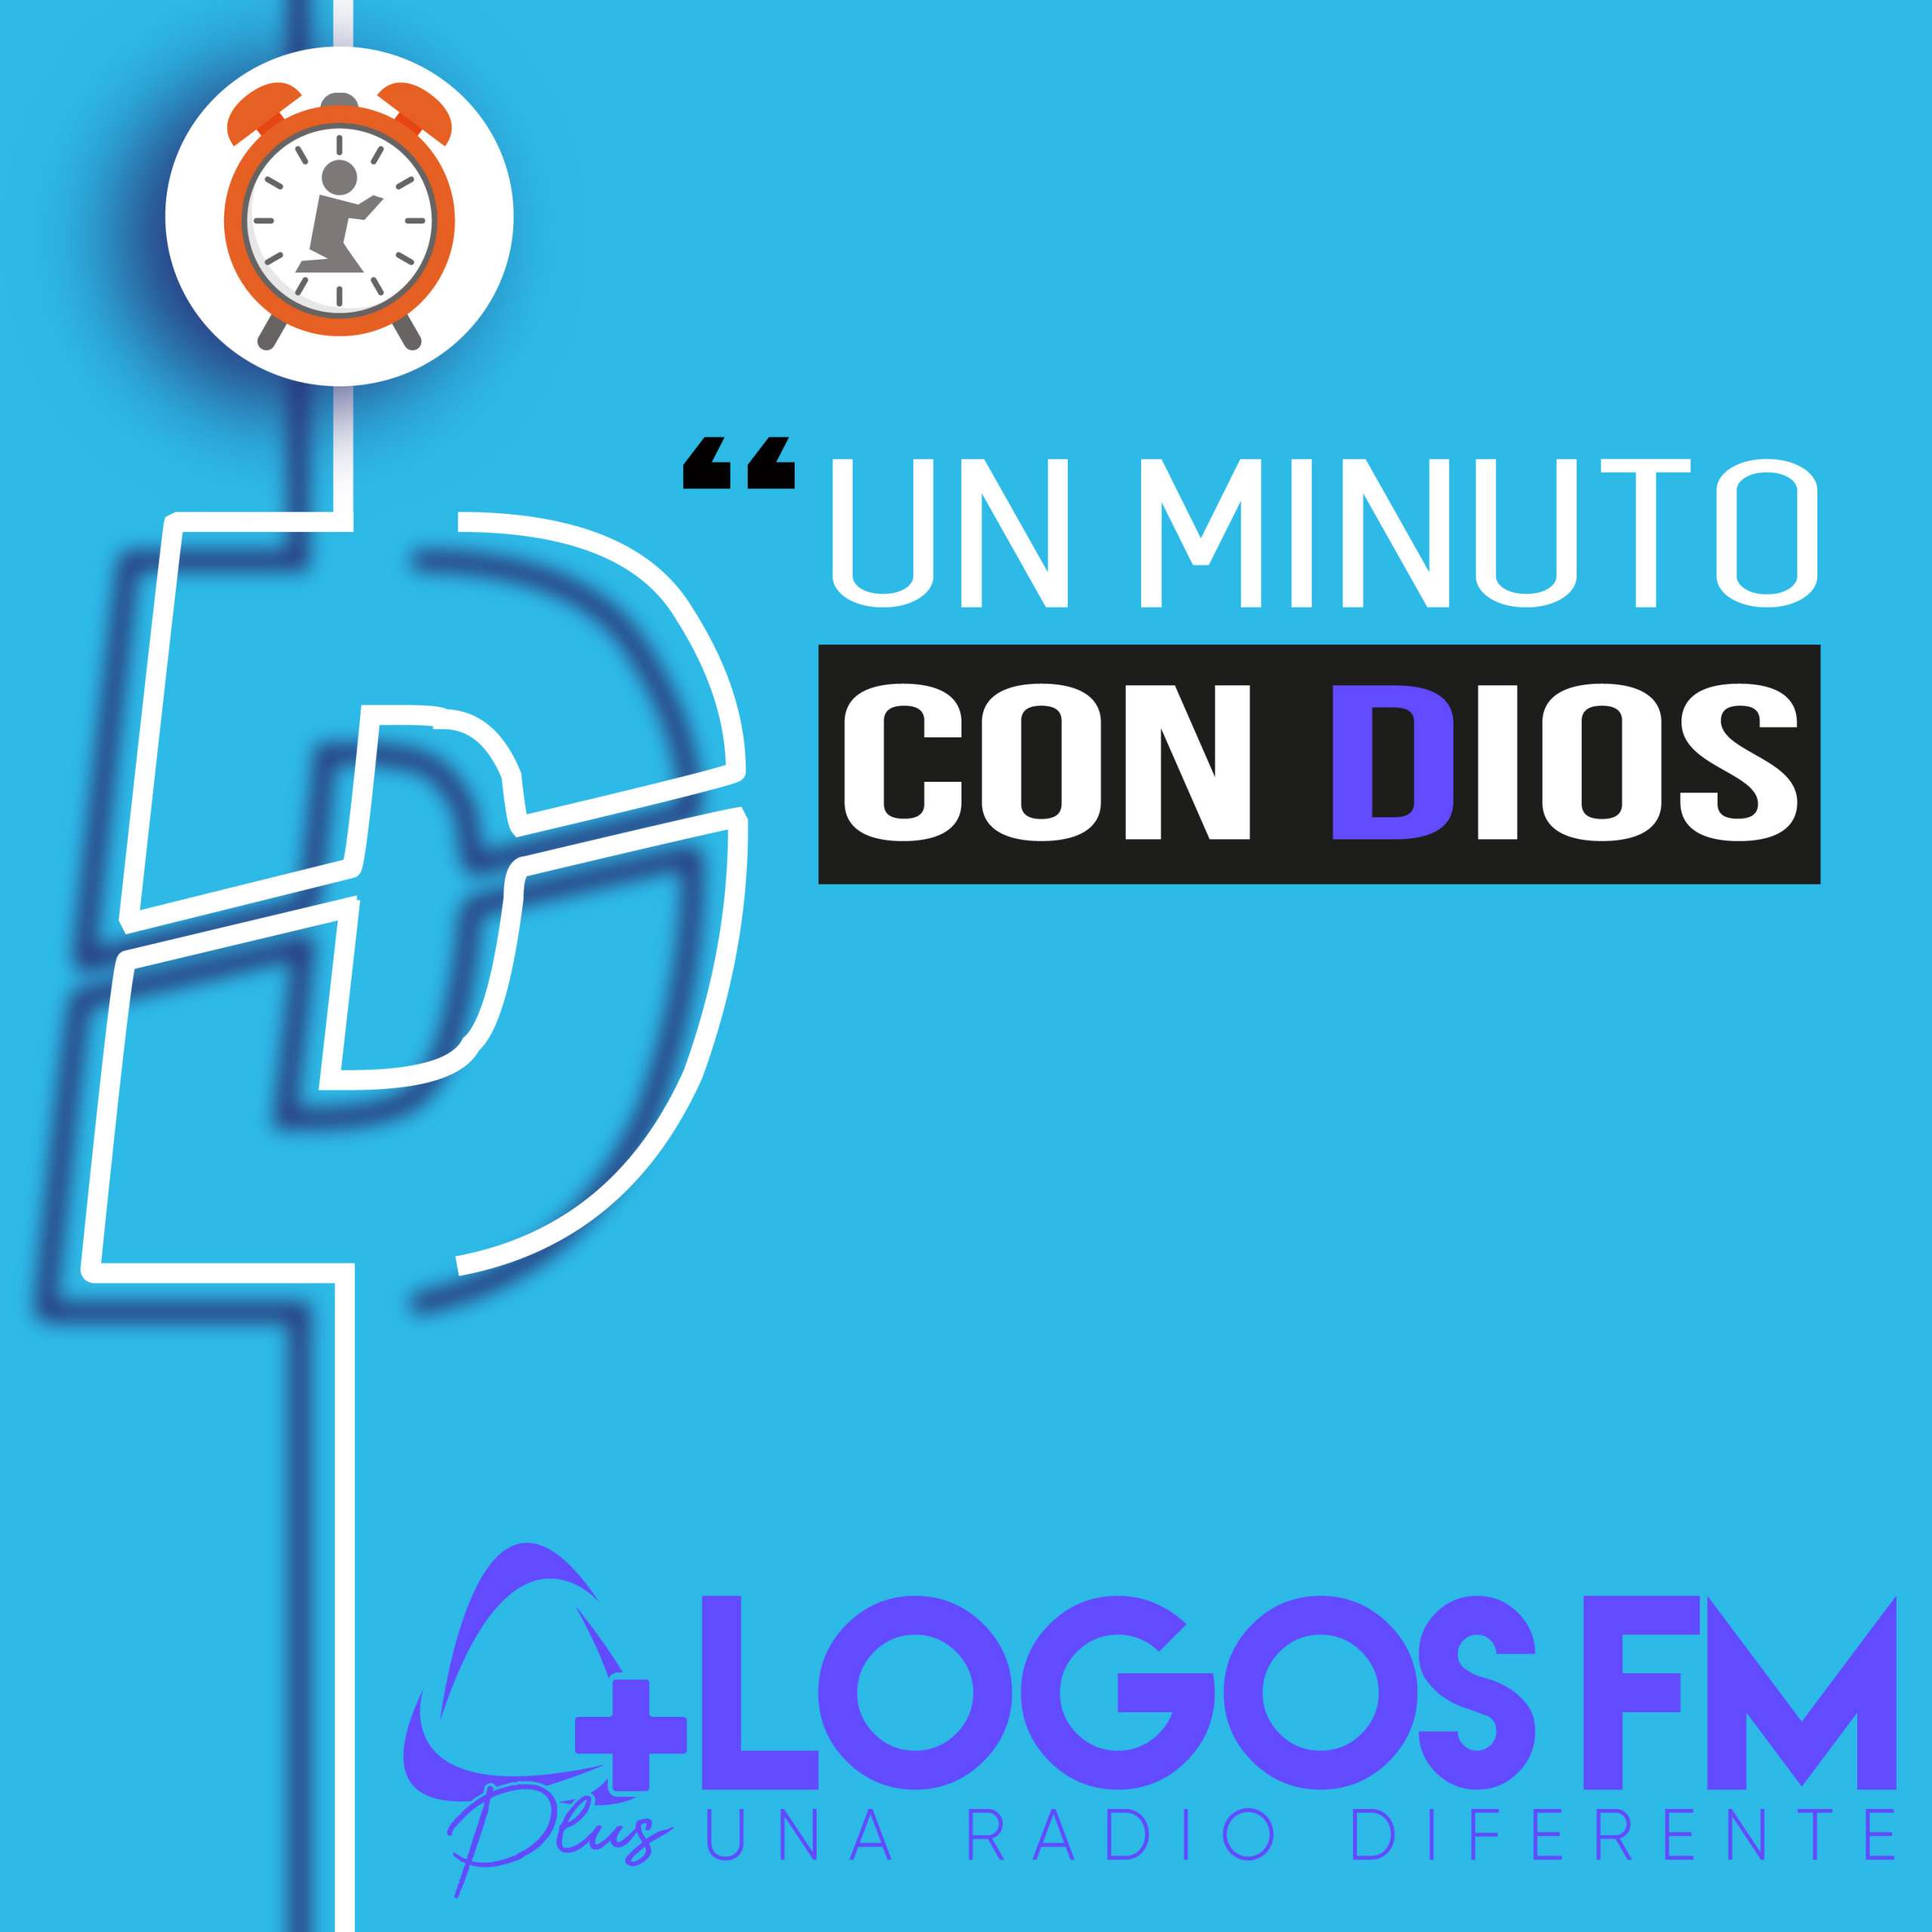 Un minuto con Dios - Episodio 457 - Oniss García